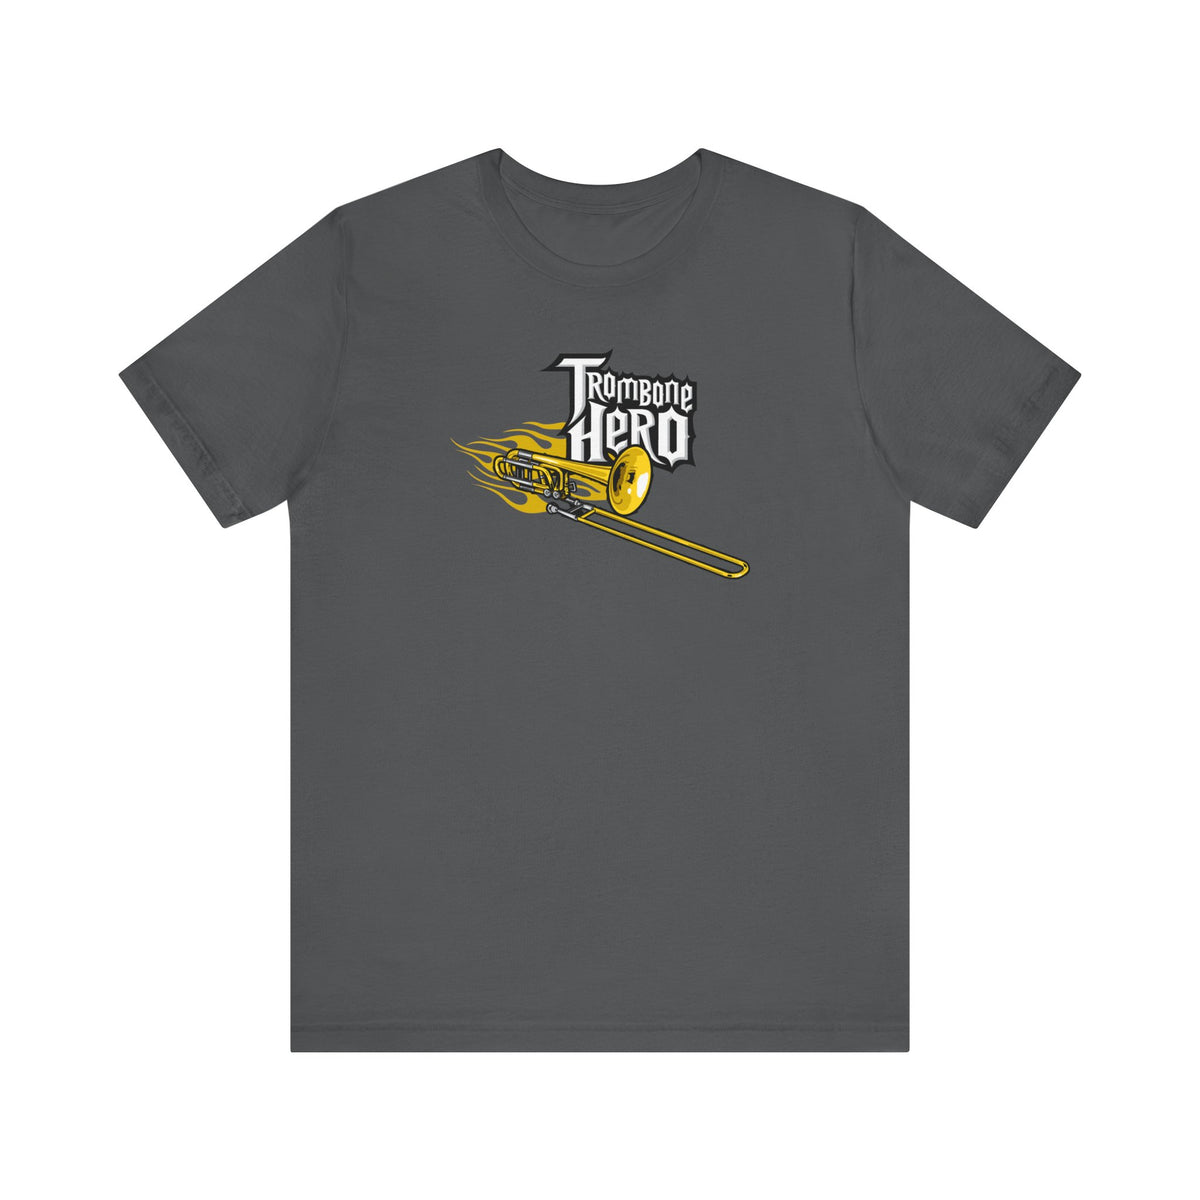 Trombone Hero - Men's T-Shirt